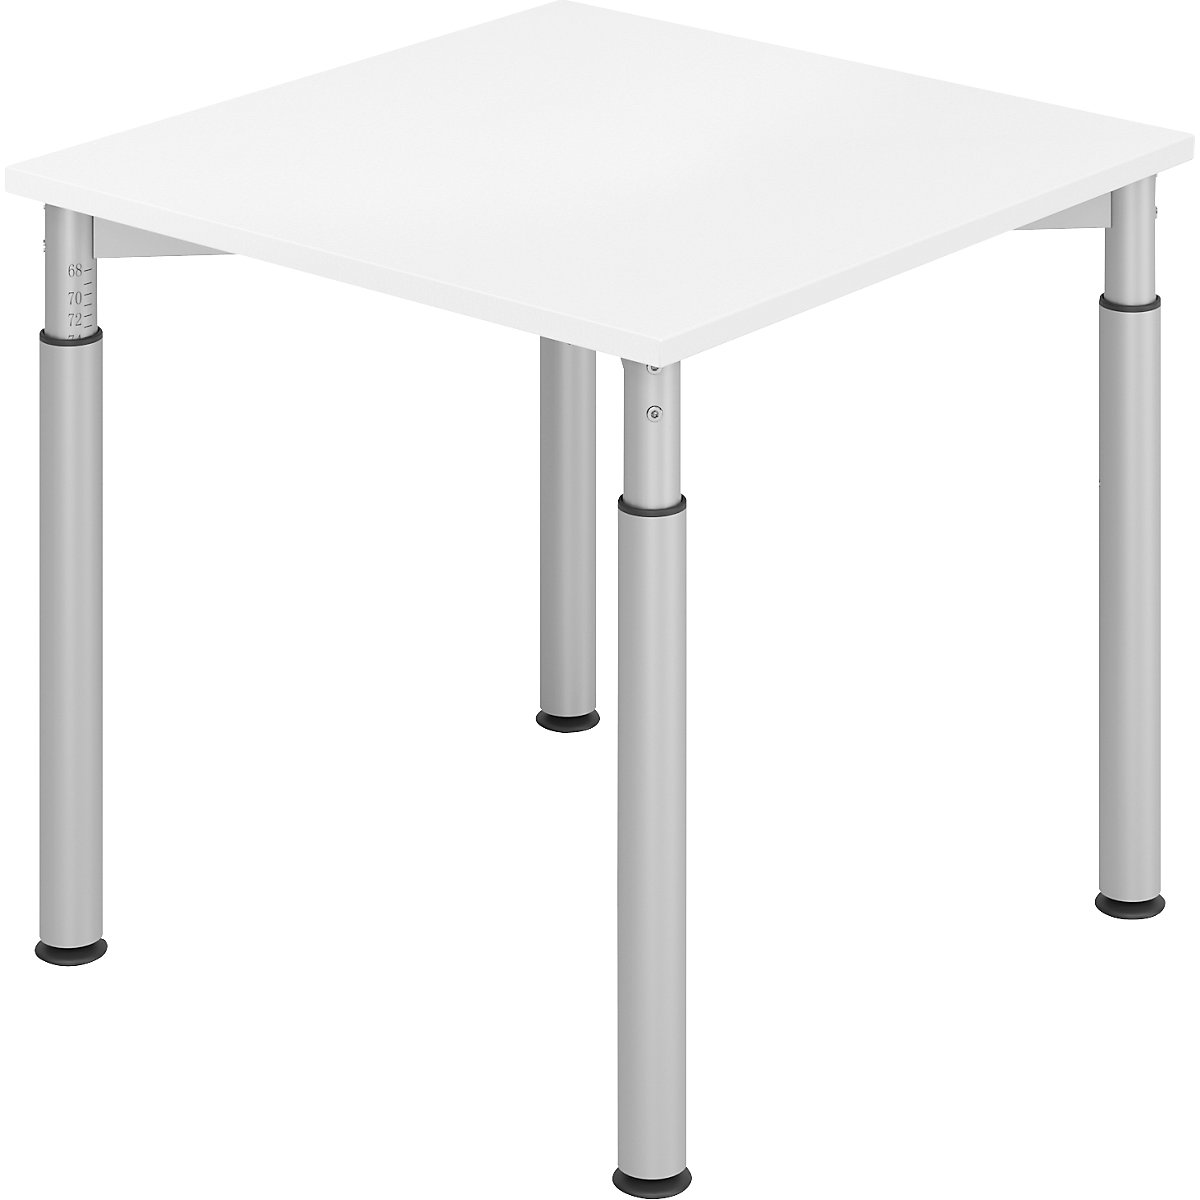 Pisaći stol s postoljem s 4 noge VERA-ZWO, s mogućnošću namještanja visine, ŠxD 800 x 800 mm, ploča u bijeloj boji, postolje u aluminij srebrnoj boji-8